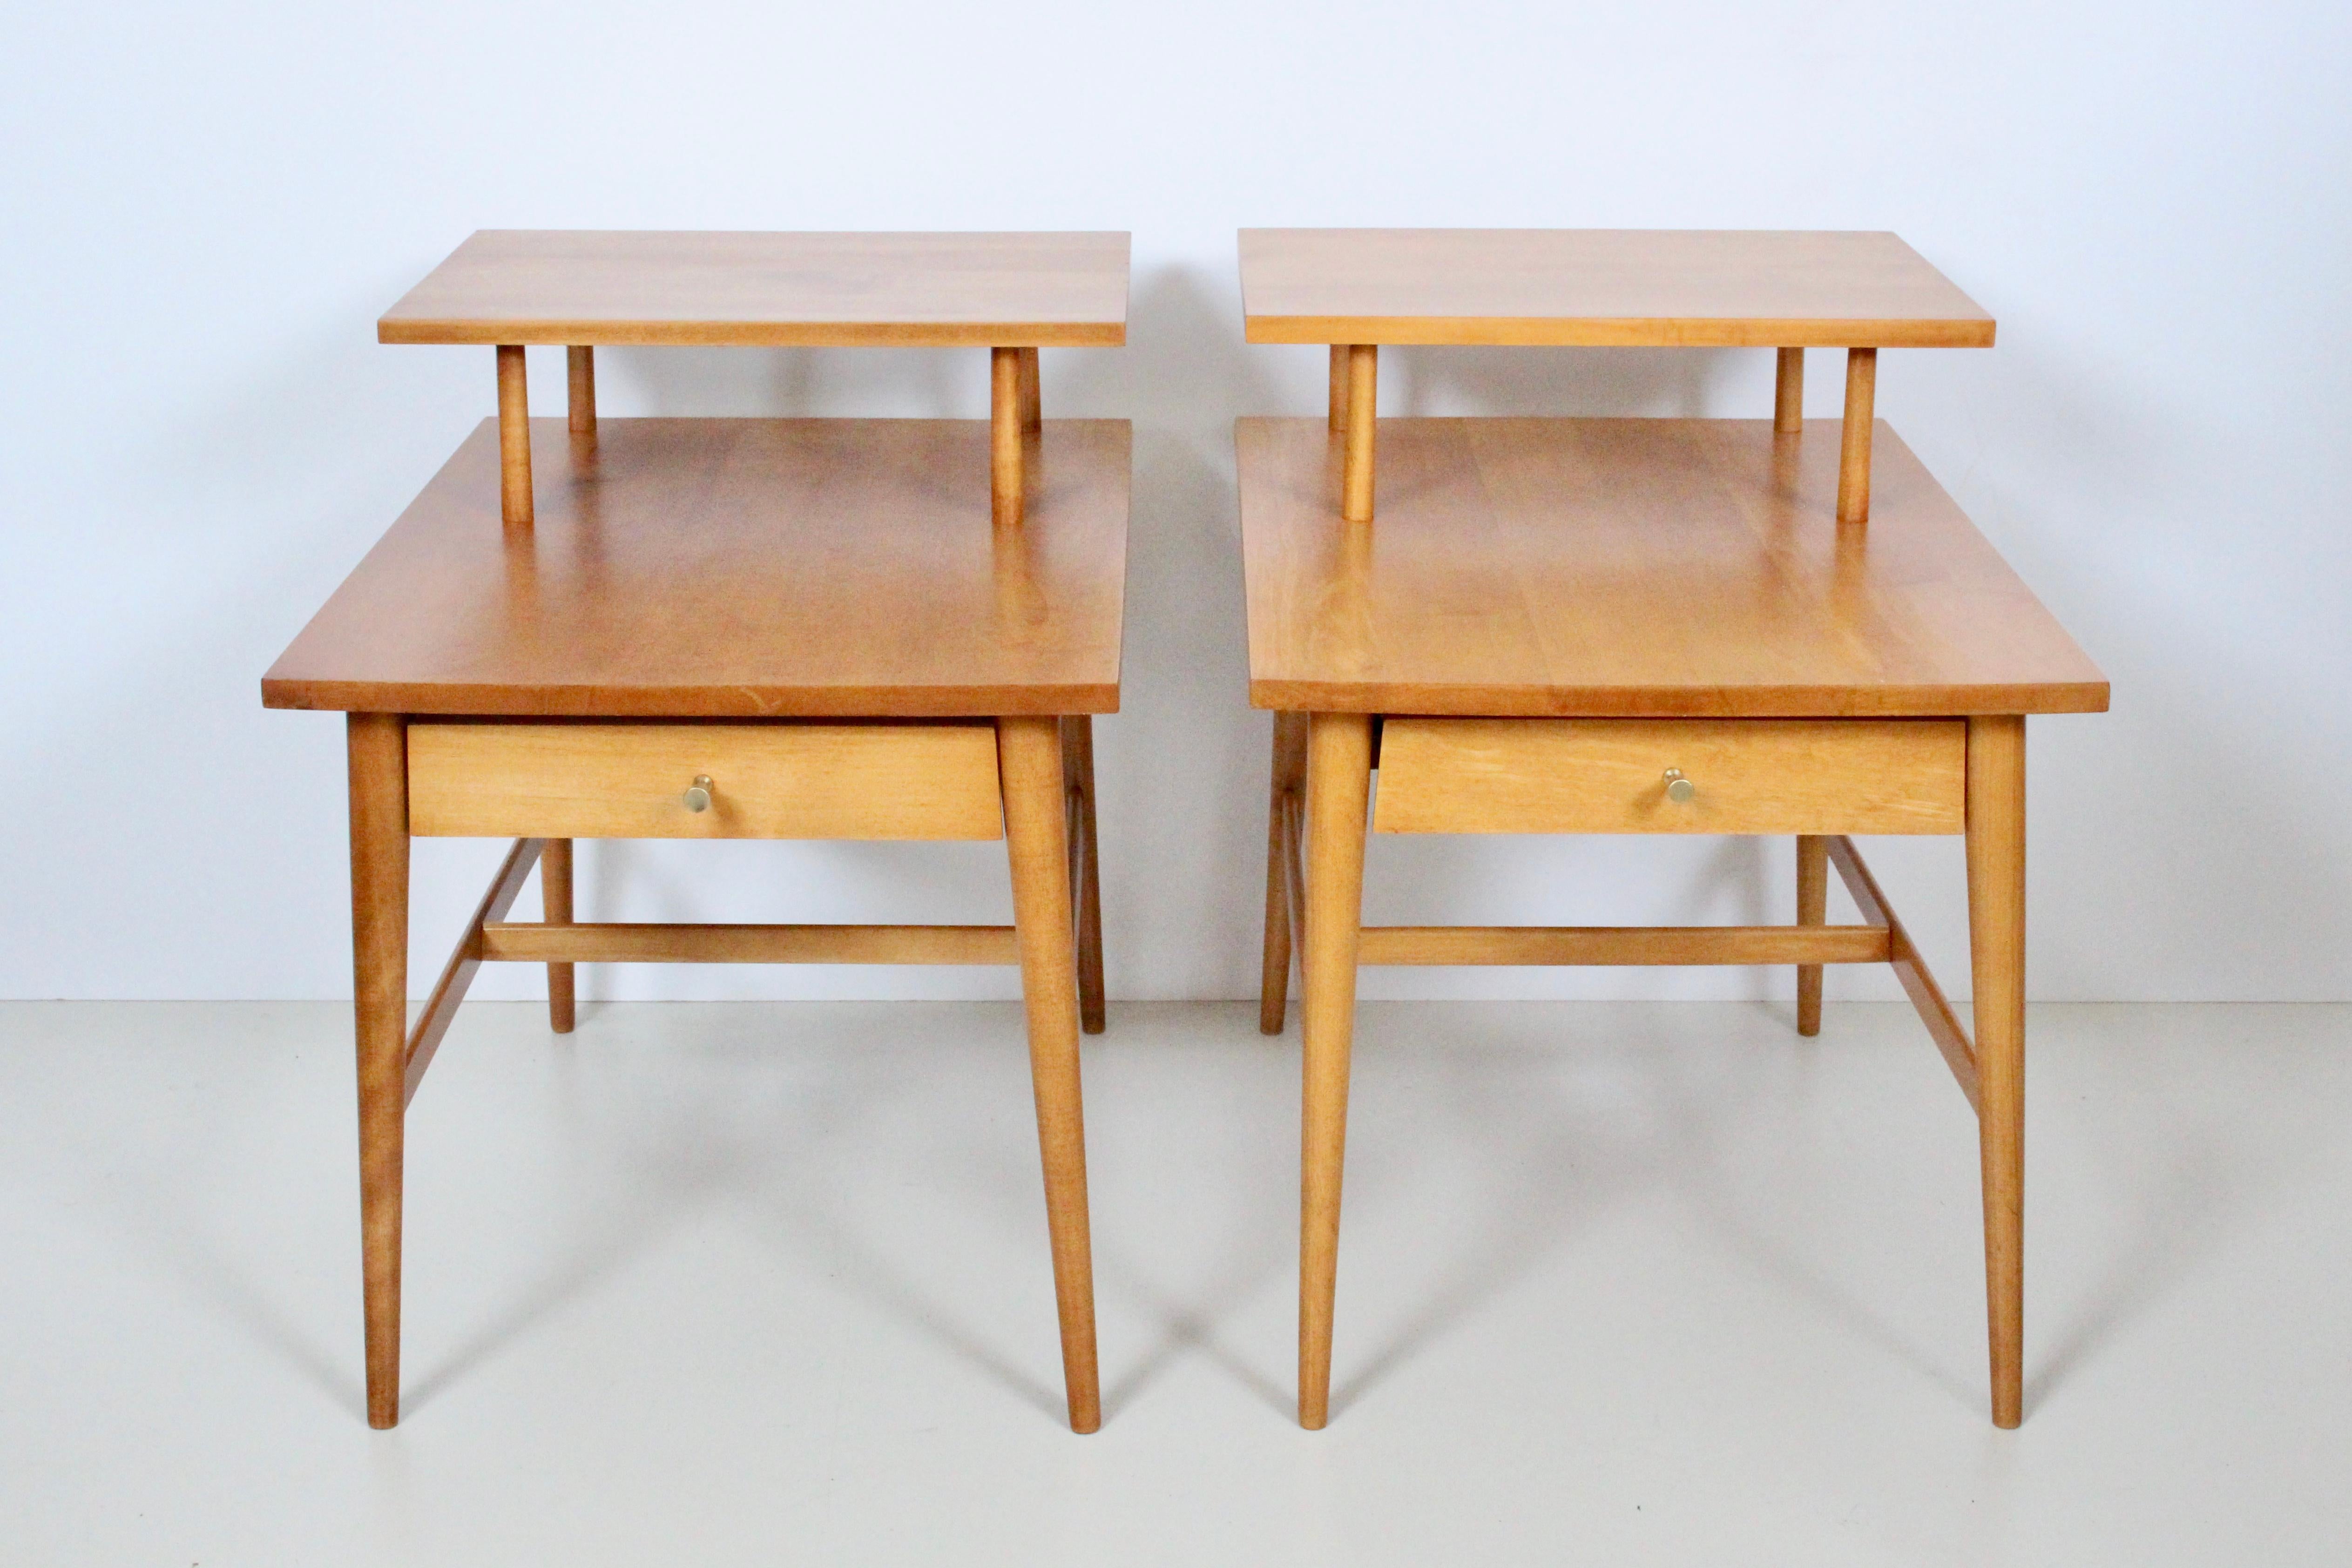 Paire Paul McCobb pour Planner Group, Winchendon Furniture #1589 Step Tables, années 1950-1960. Tables d'appoint. Tables d'appoint. Tables de nuit. Ce meuble est doté d'une solide forme rectangulaire à deux niveaux, de tiroirs simples profonds et de